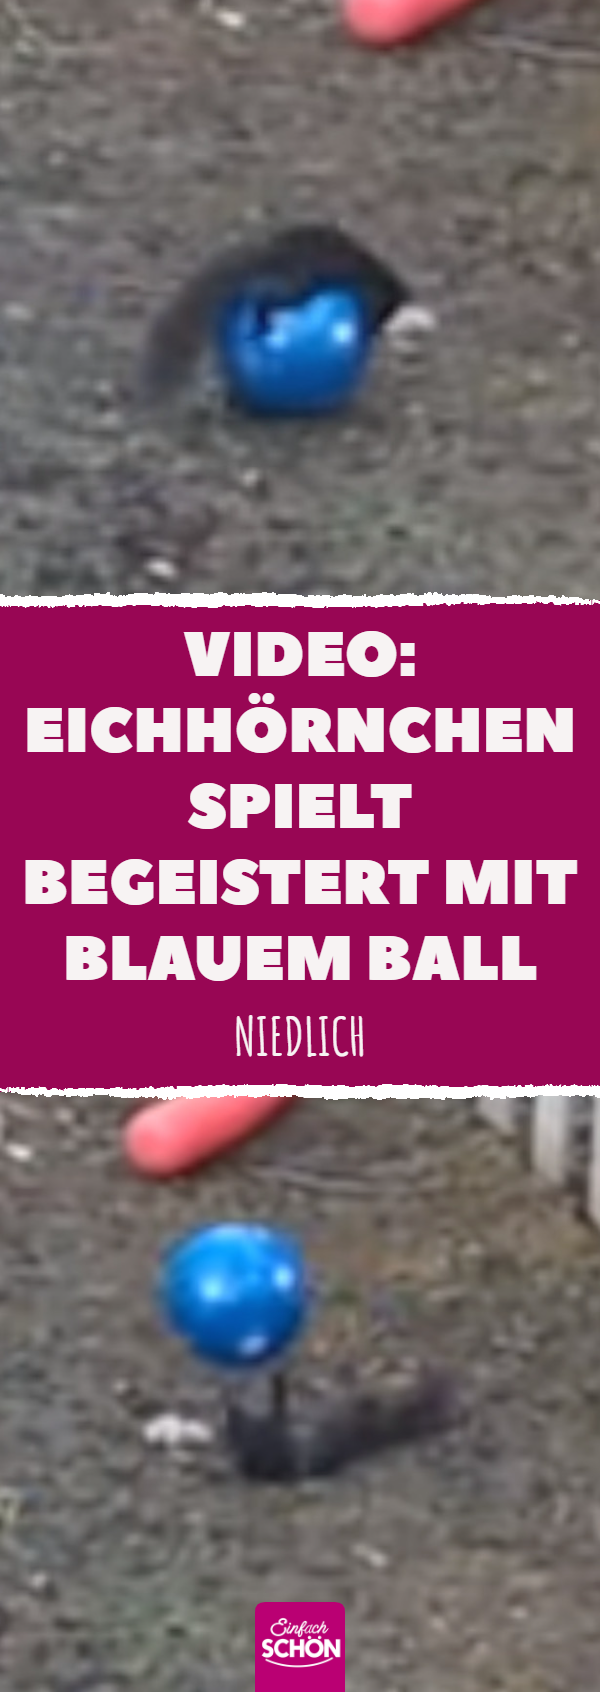 Video: Eichhörnchen spielt begeistert mit blauem Ball